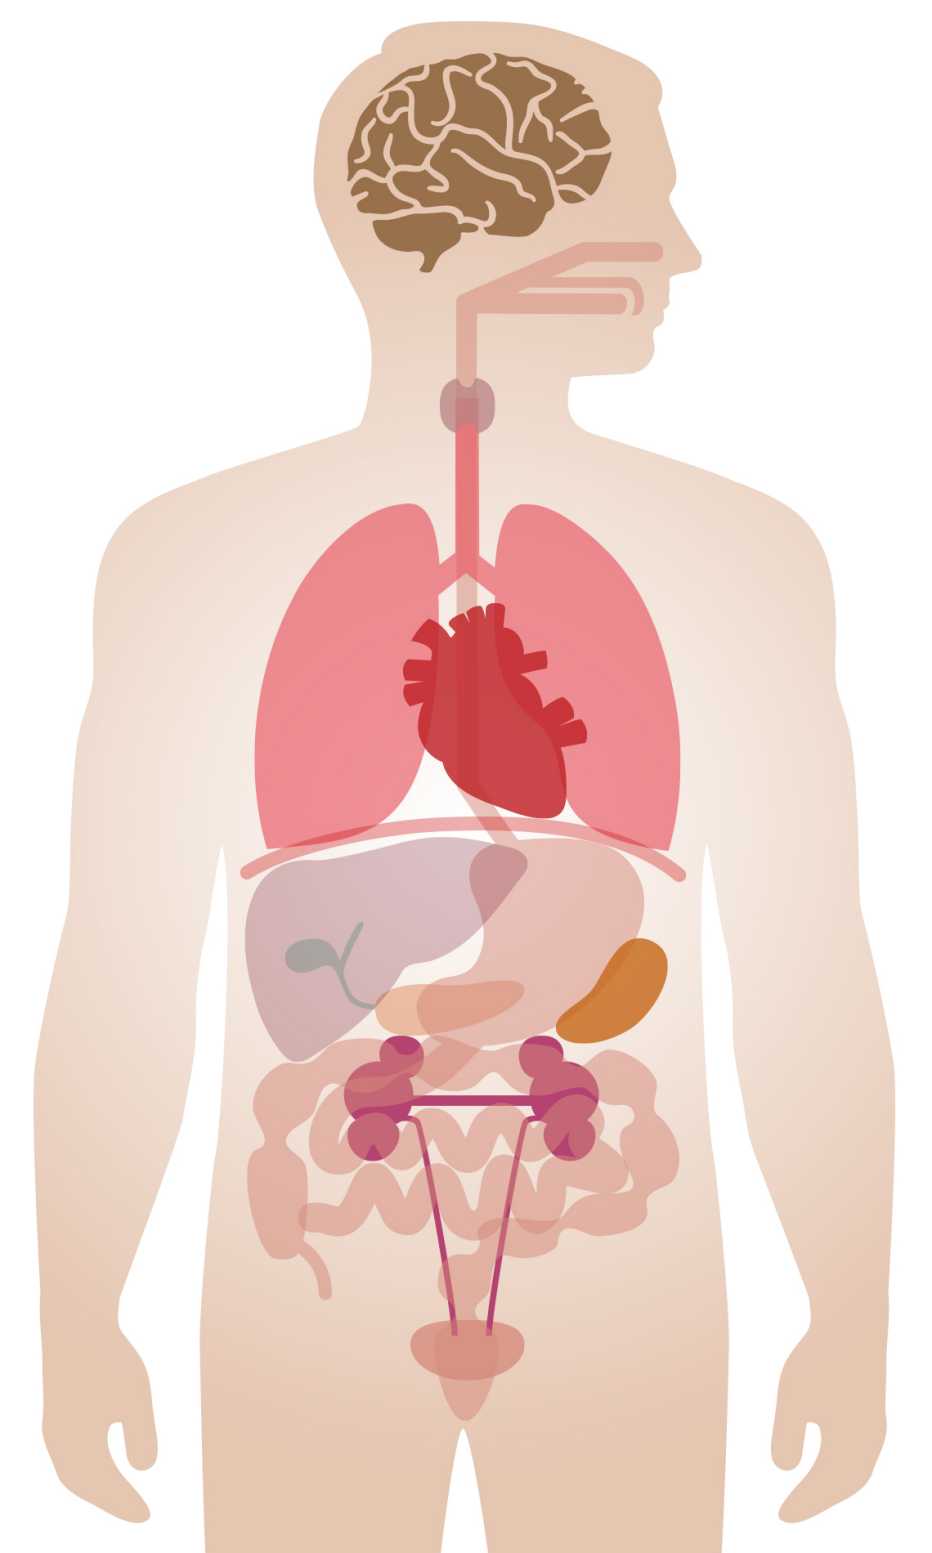 Ilustración del cuerpo humano y sus órganos